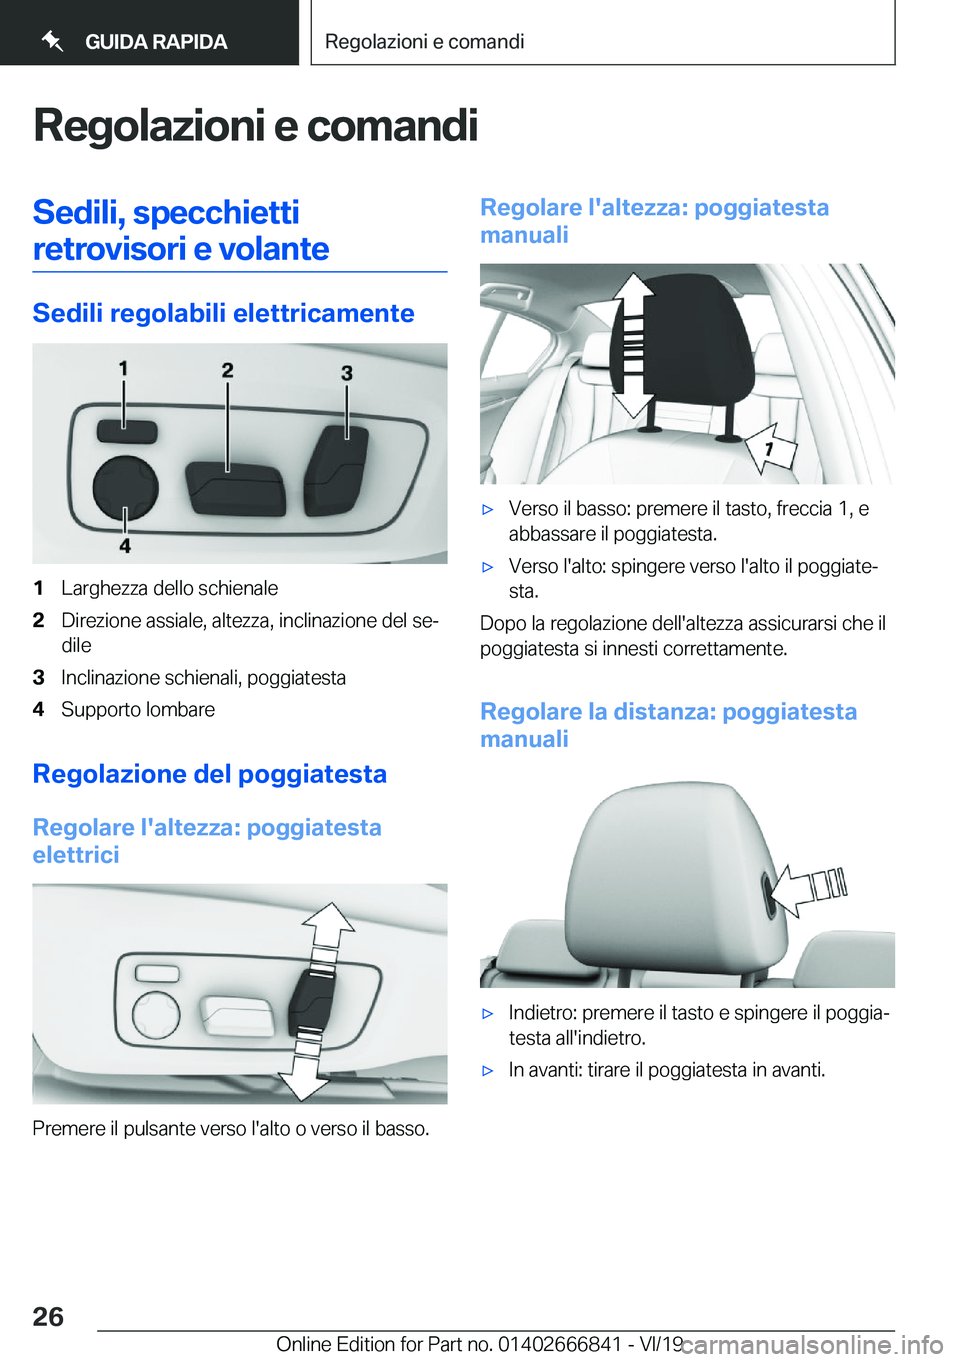 BMW X3 M 2020  Libretti Di Uso E manutenzione (in Italian) �R�e�g�o�l�a�z�i�o�n�i��e��c�o�m�a�n�d�i�S�e�d�i�l�i�,��s�p�e�c�c�h�i�e�t�t�i�r�e�t�r�o�v�i�s�o�r�i��e��v�o�l�a�n�t�e
�S�e�d�i�l�i��r�e�g�o�l�a�b�i�l�i��e�l�e�t�t�r�i�c�a�m�e�n�t�e
�1�L�a�r�g�h